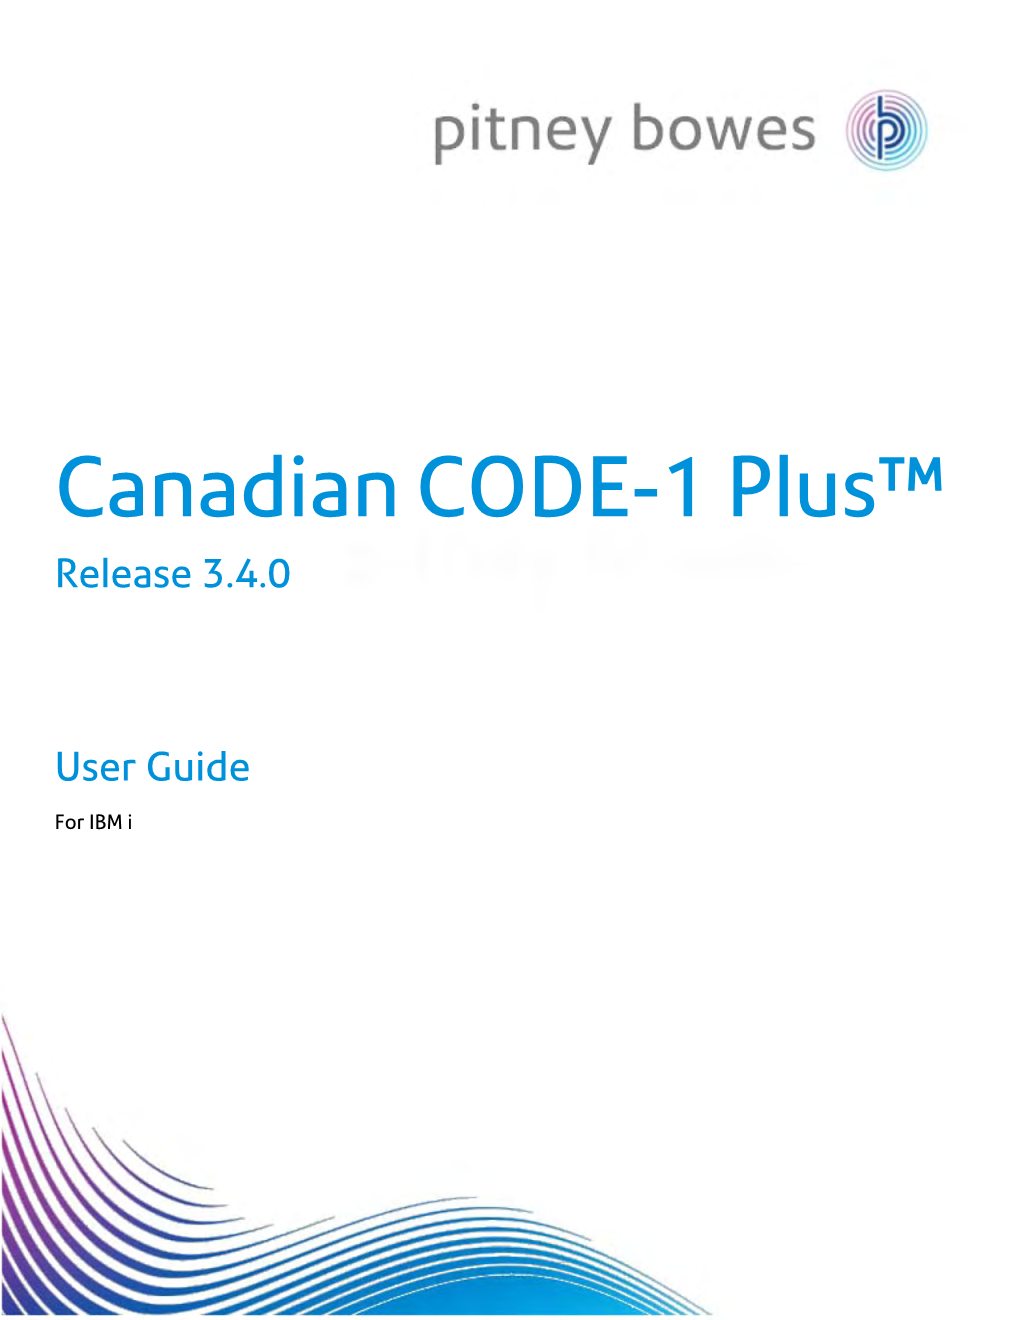 Canadian CODE-1 Plus V3.4.0 User Guide for IBM I